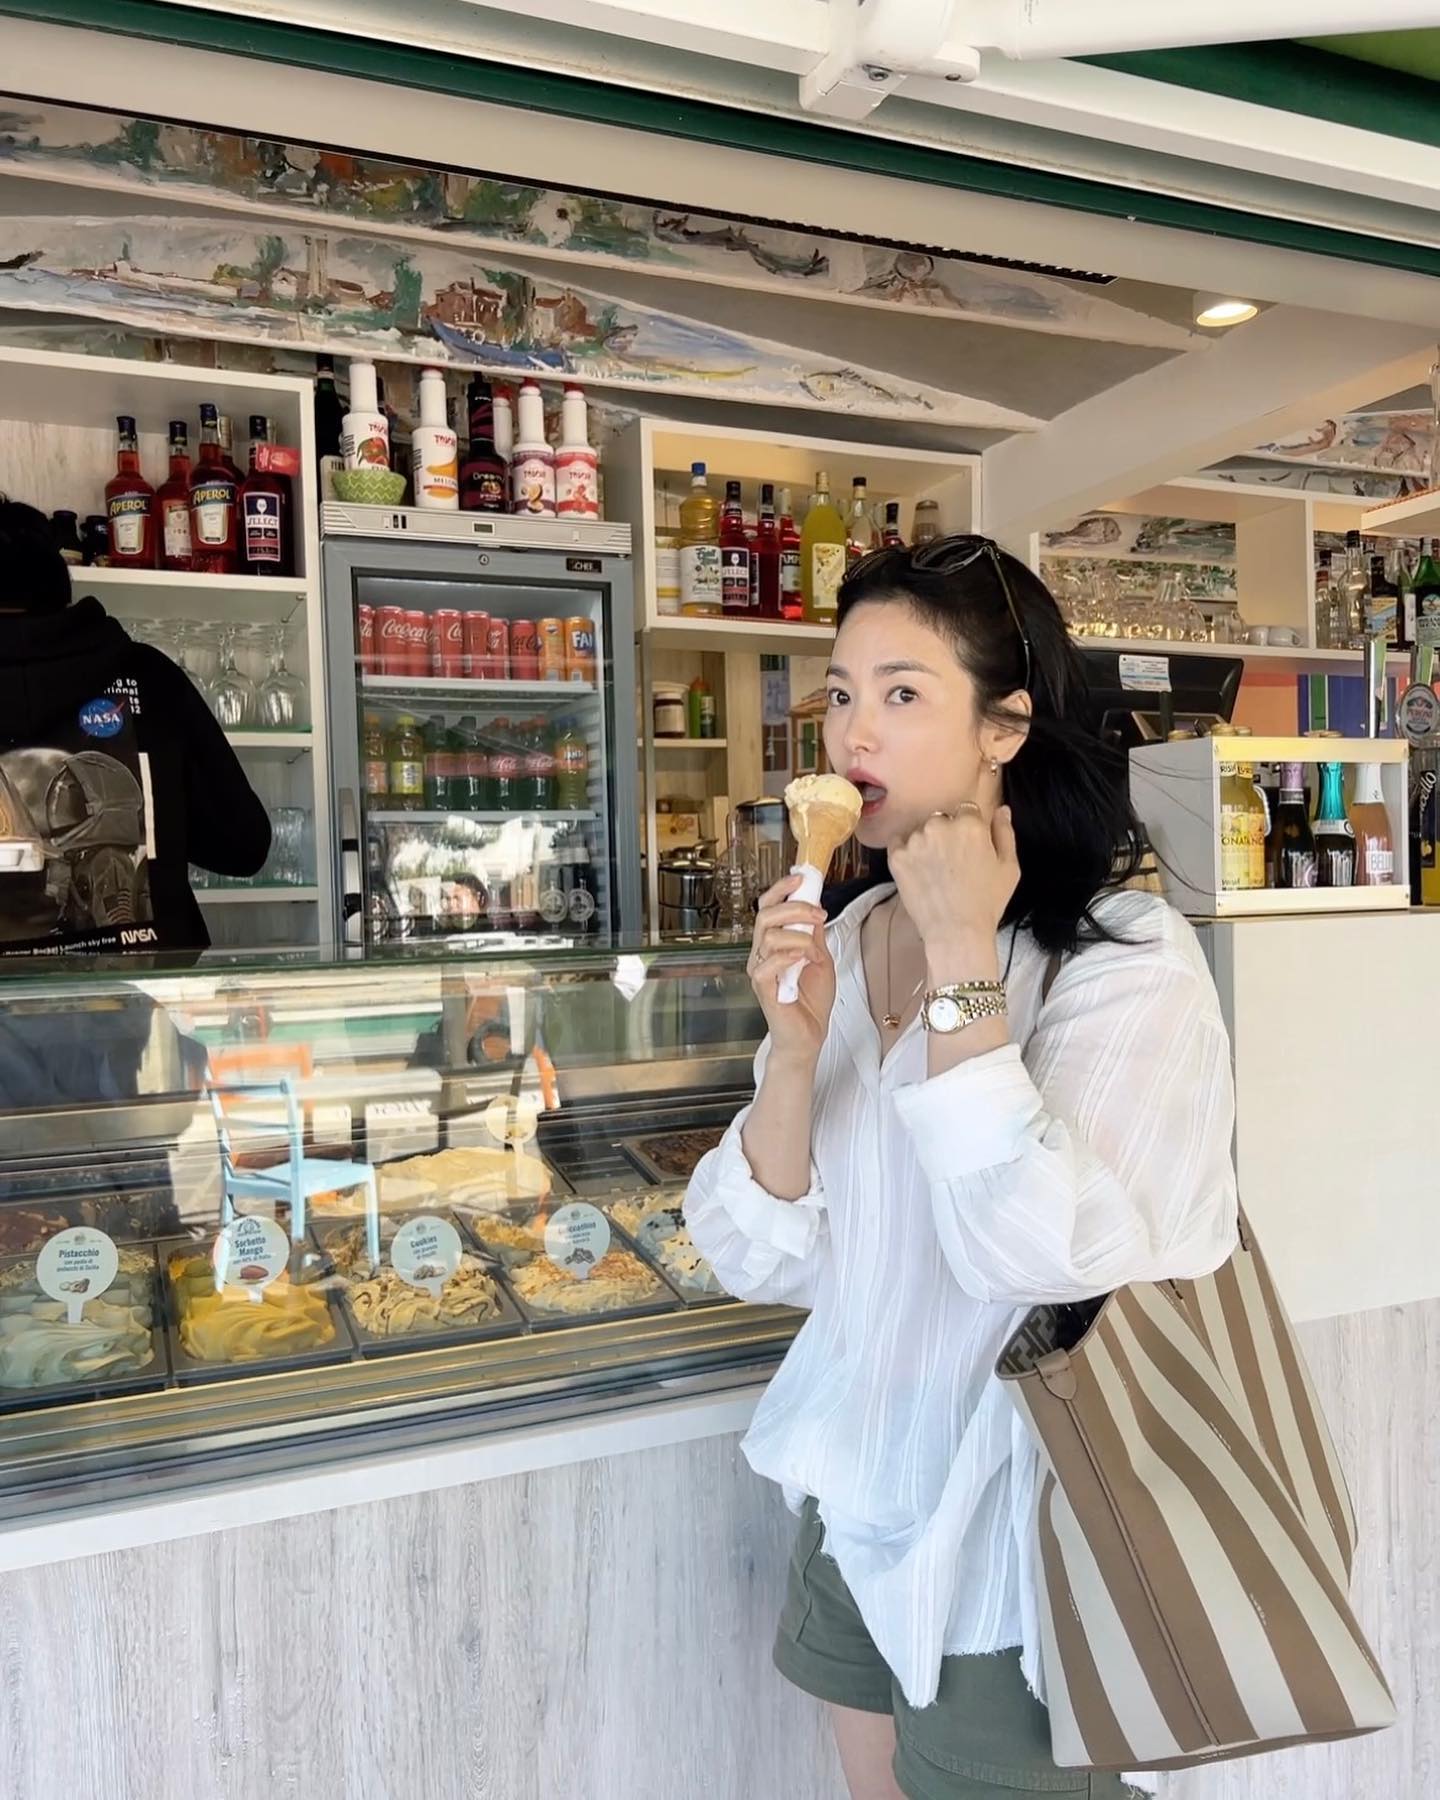 Song Hye Kyo luôn đẹp đỉnh cao khi diện áo sơ mi trắng, gợi ý 10 cách phối đồ cho mọi độ tuổi - Ảnh 2.